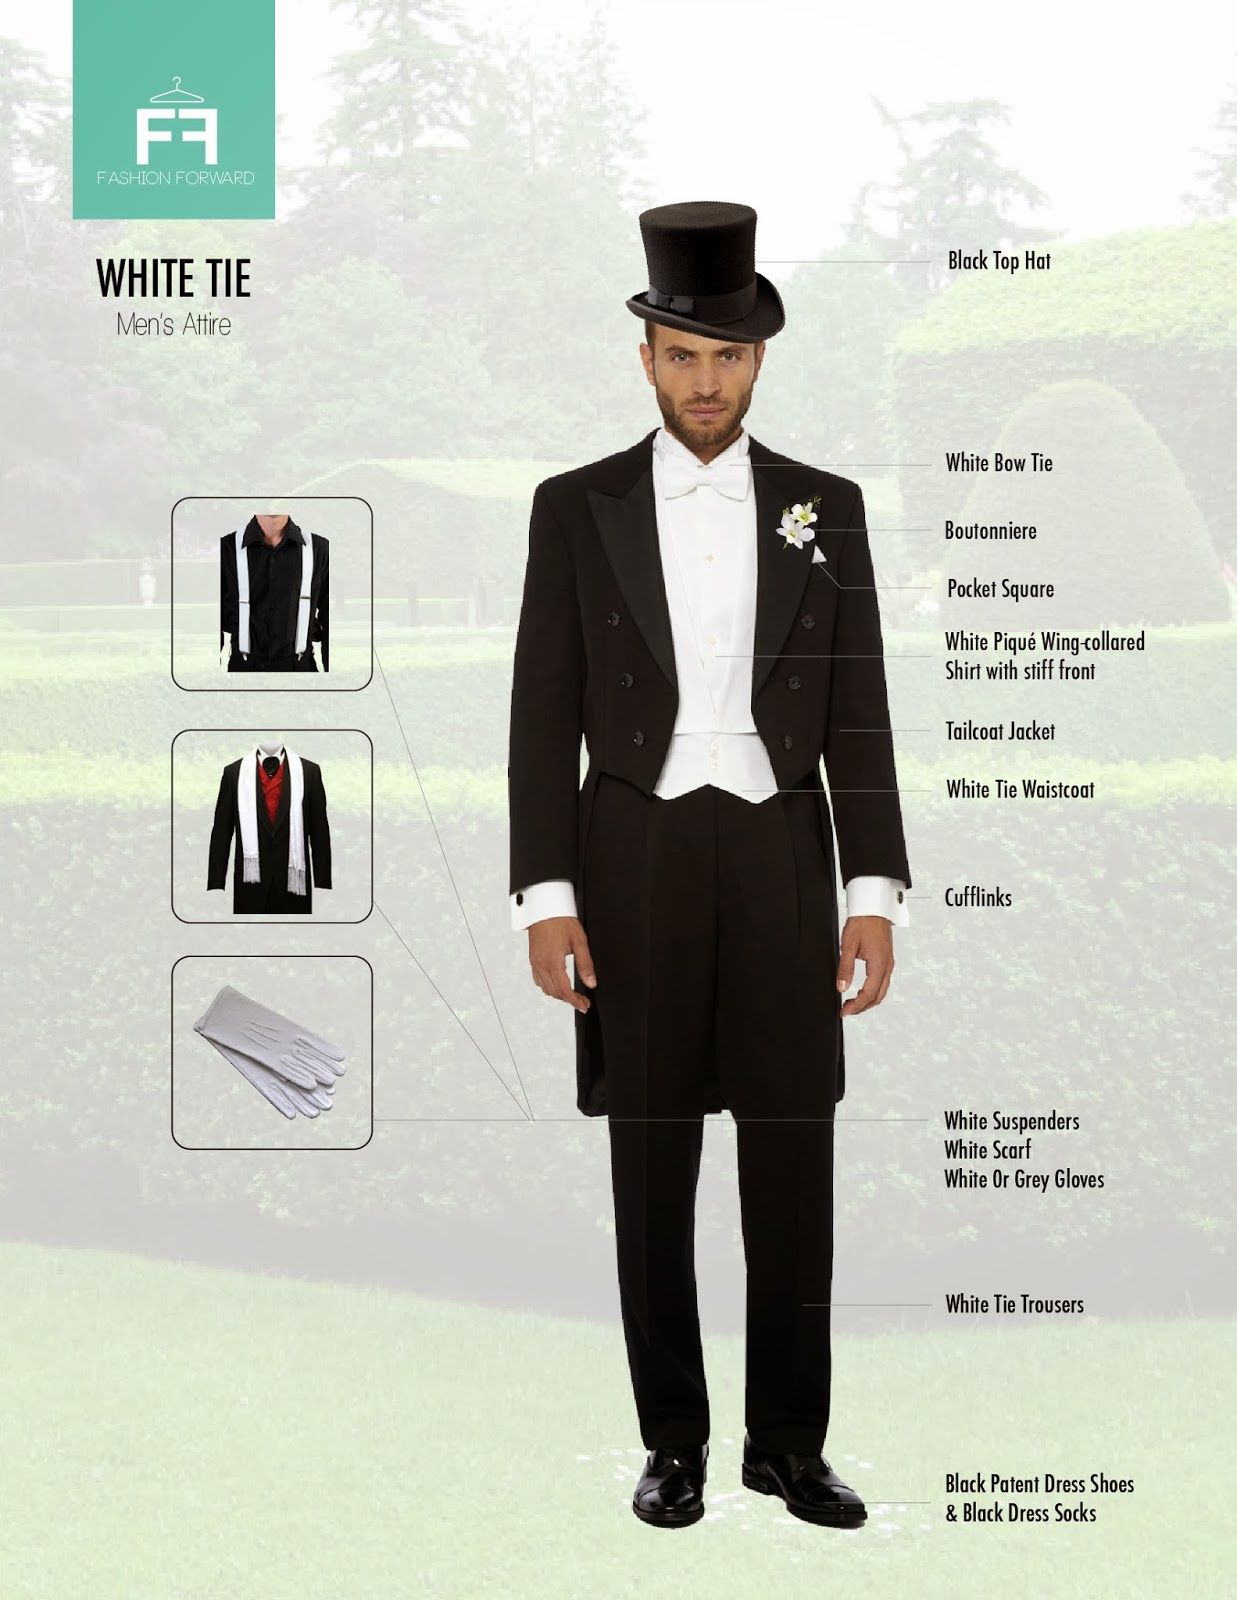 Дресс-код black tie для женщин и мужчин. что значит дресс-код black tie? особенности дресс-кода black tie